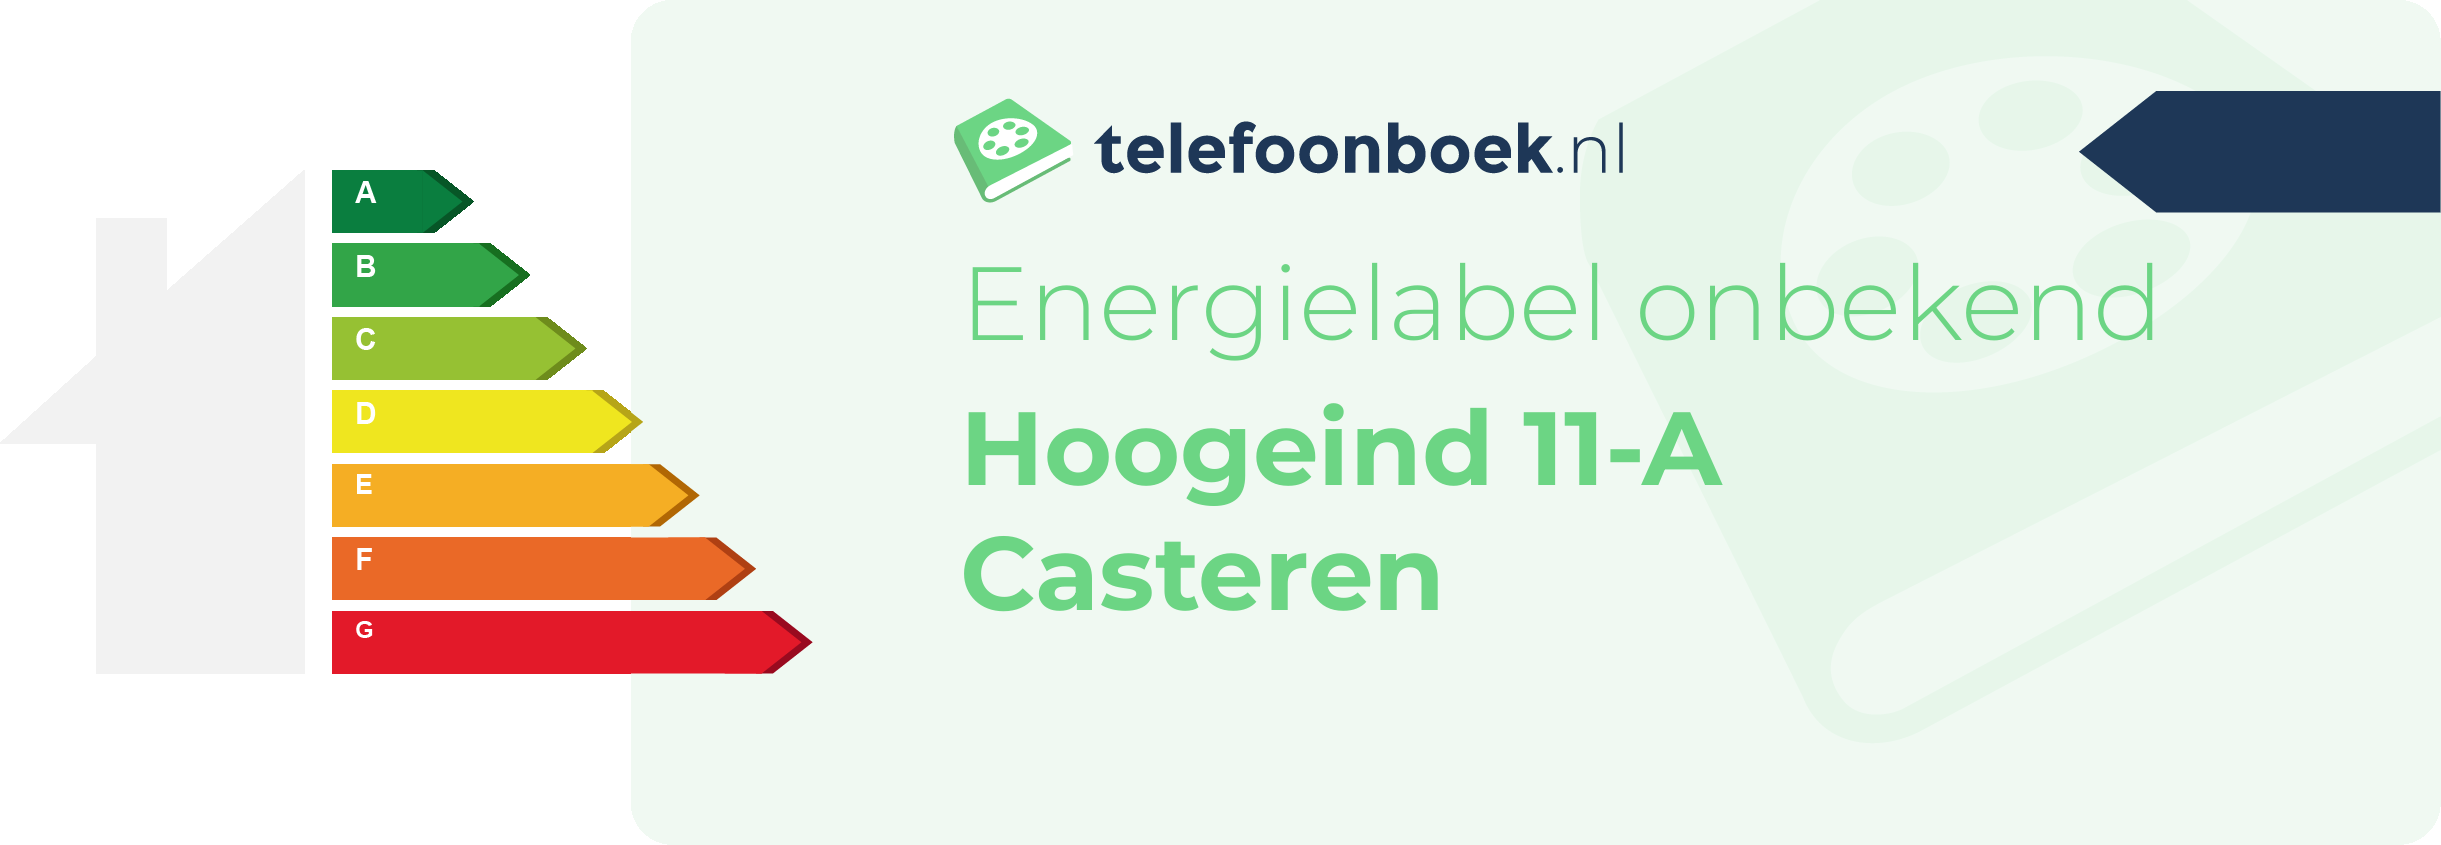 Energielabel Hoogeind 11-A Casteren